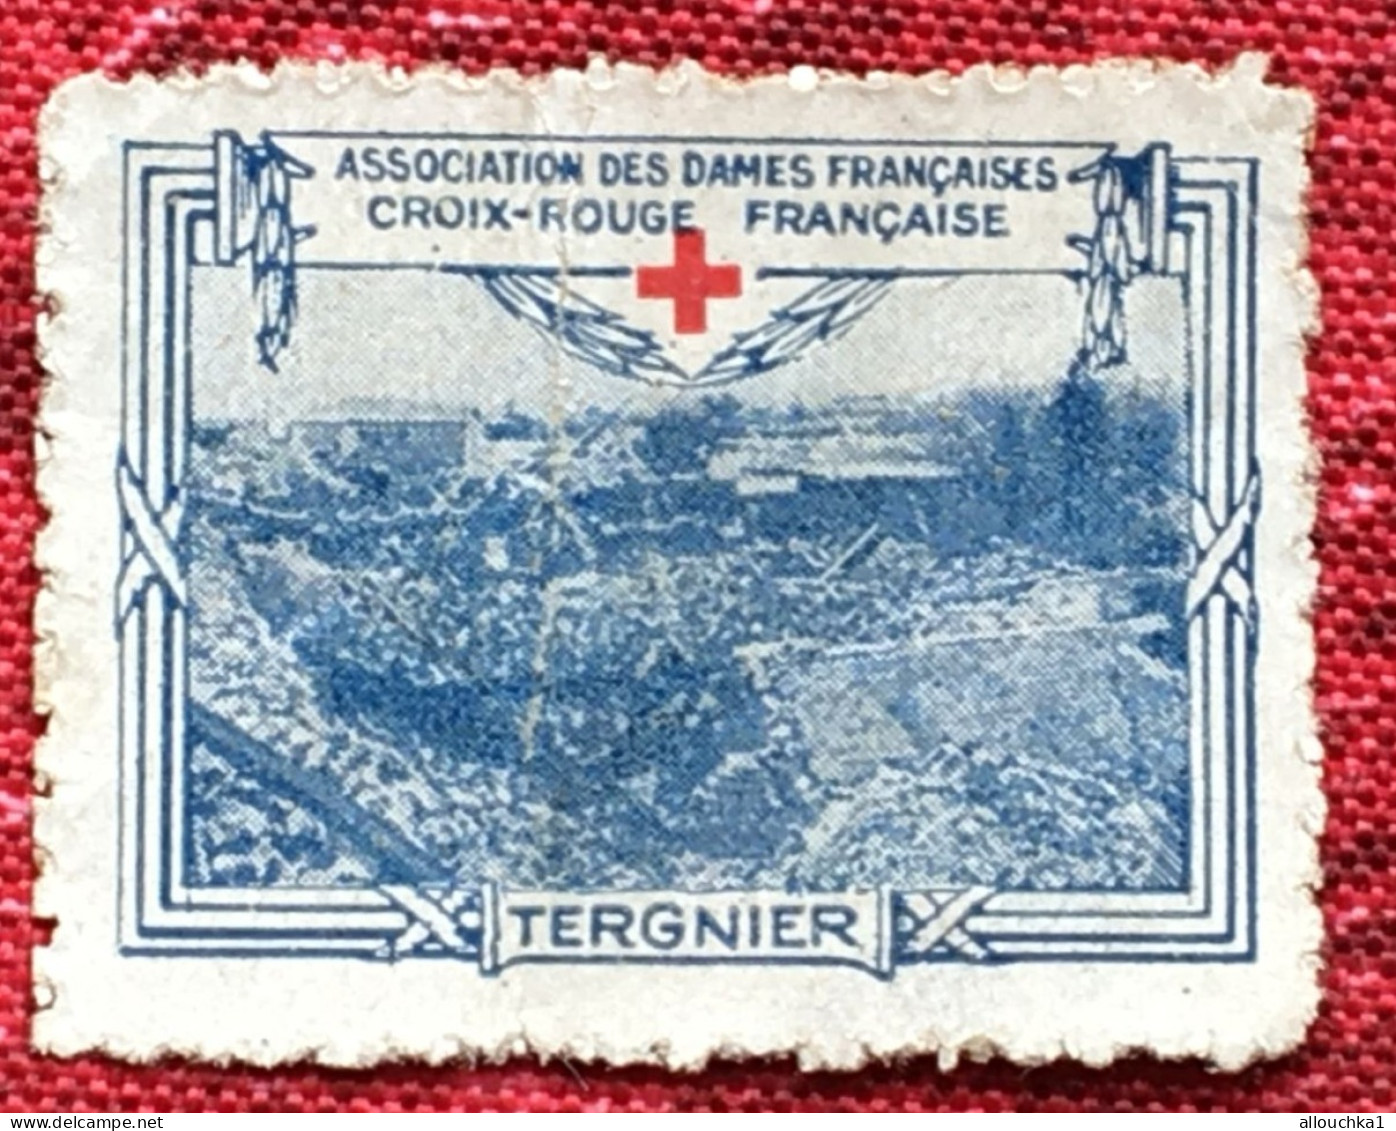 Croix Rouge Française Association Dames Françaises Tergnier -Red Cross-Timbre-Vignette-Erinnophilie-Stamp-Sticker-Viñeta - Rotes Kreuz